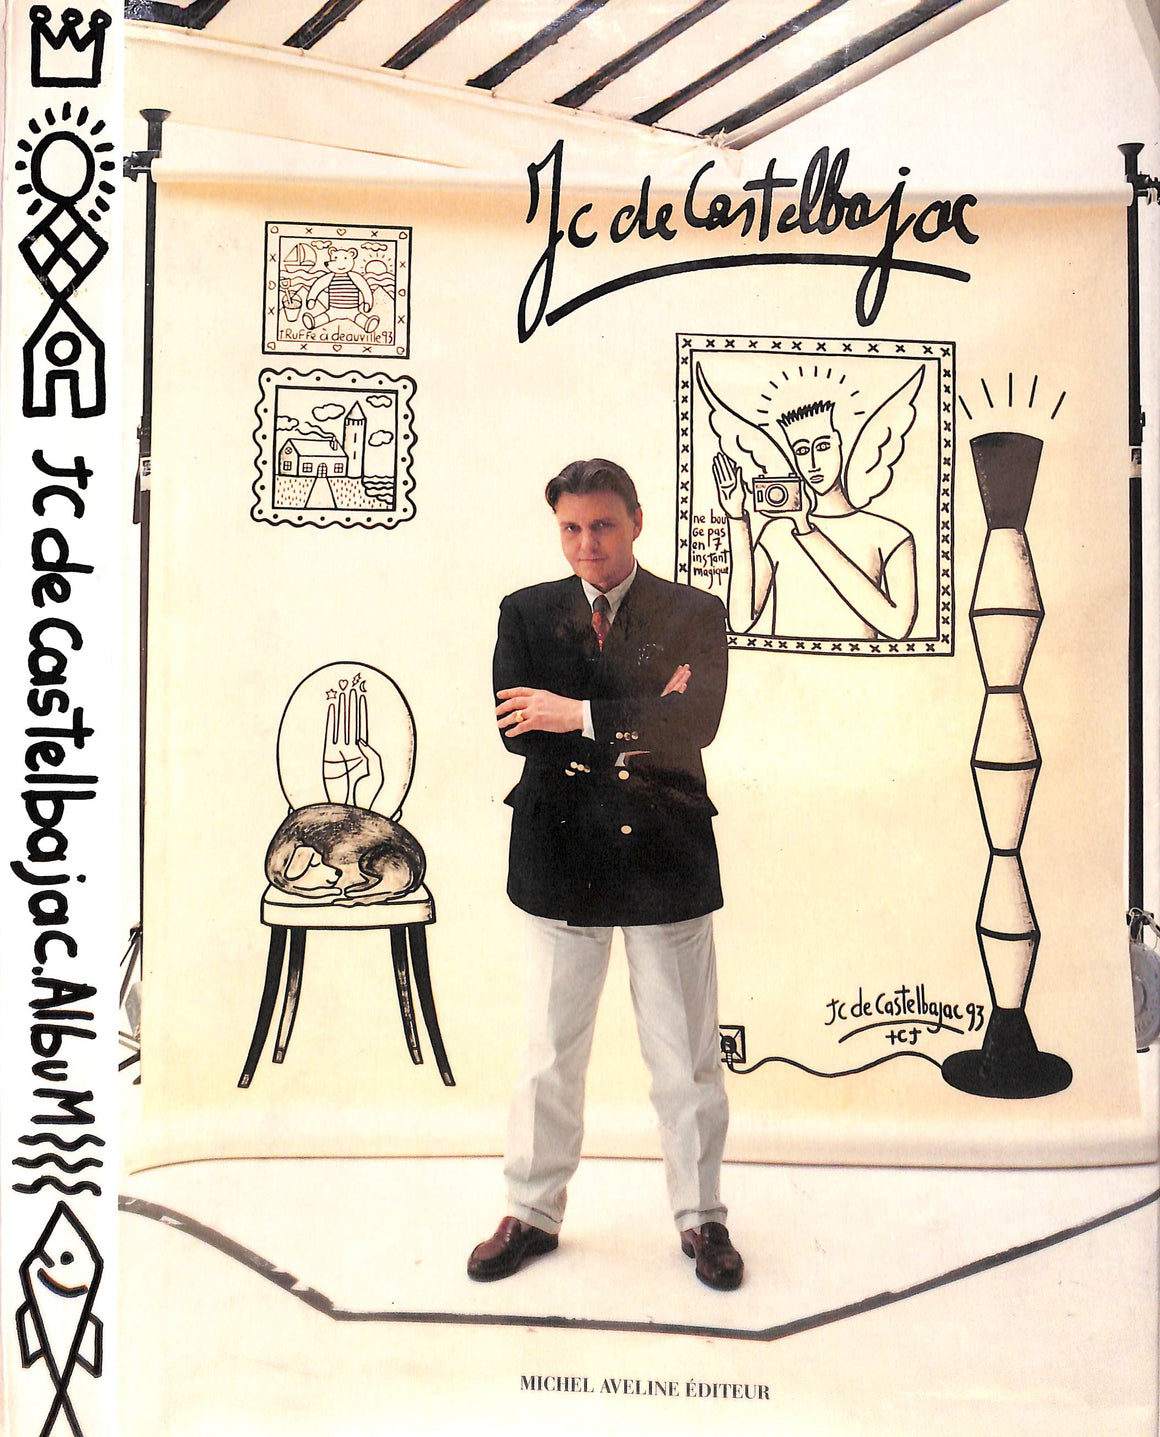 "JC De Castelbajac Album" 1993